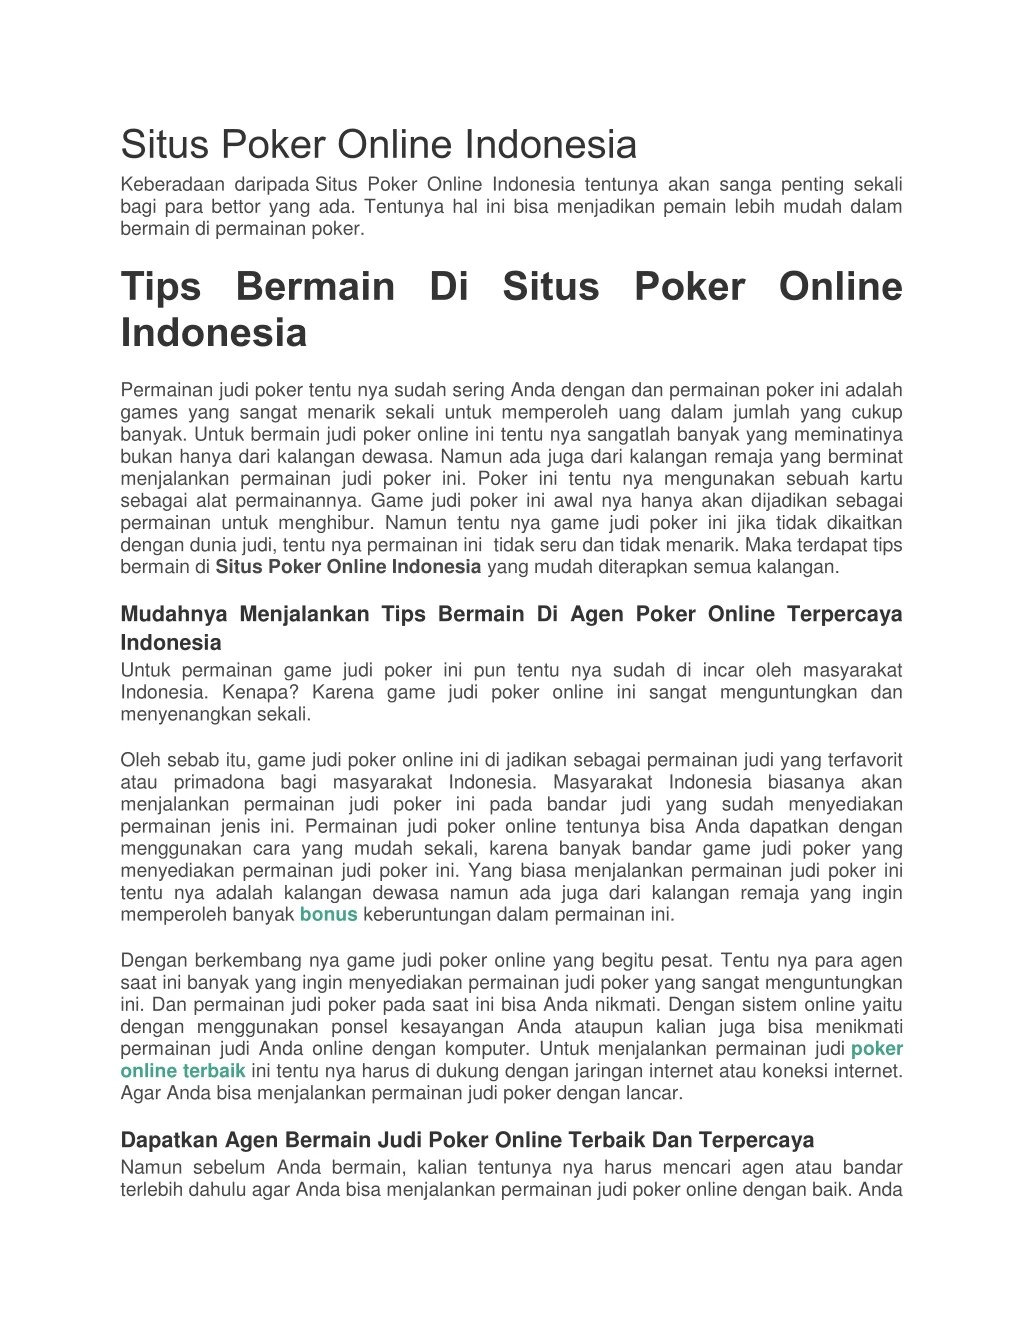 situs poker online indonesia keberadaan daripada